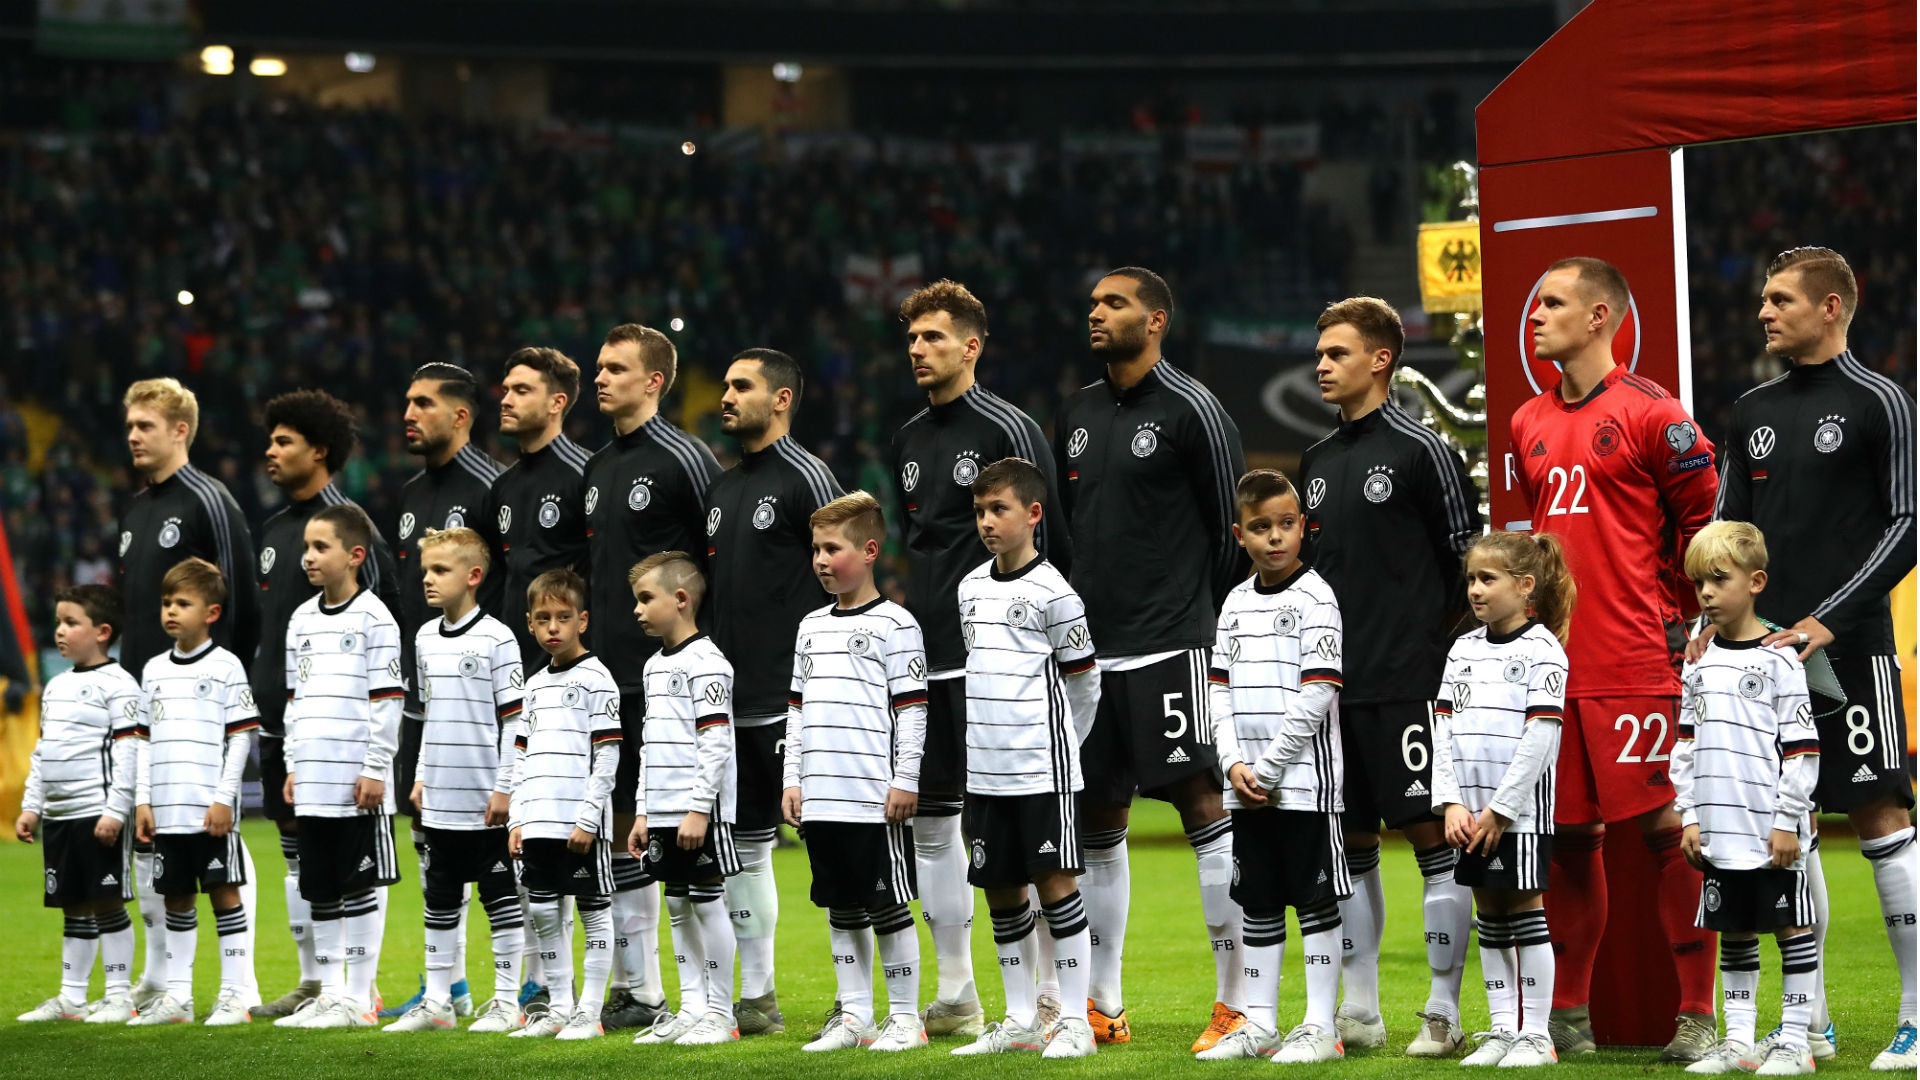 لیست تیم ملی آلمان برای بازی های ملی مارس 2021 اعلام شد | طرفداری